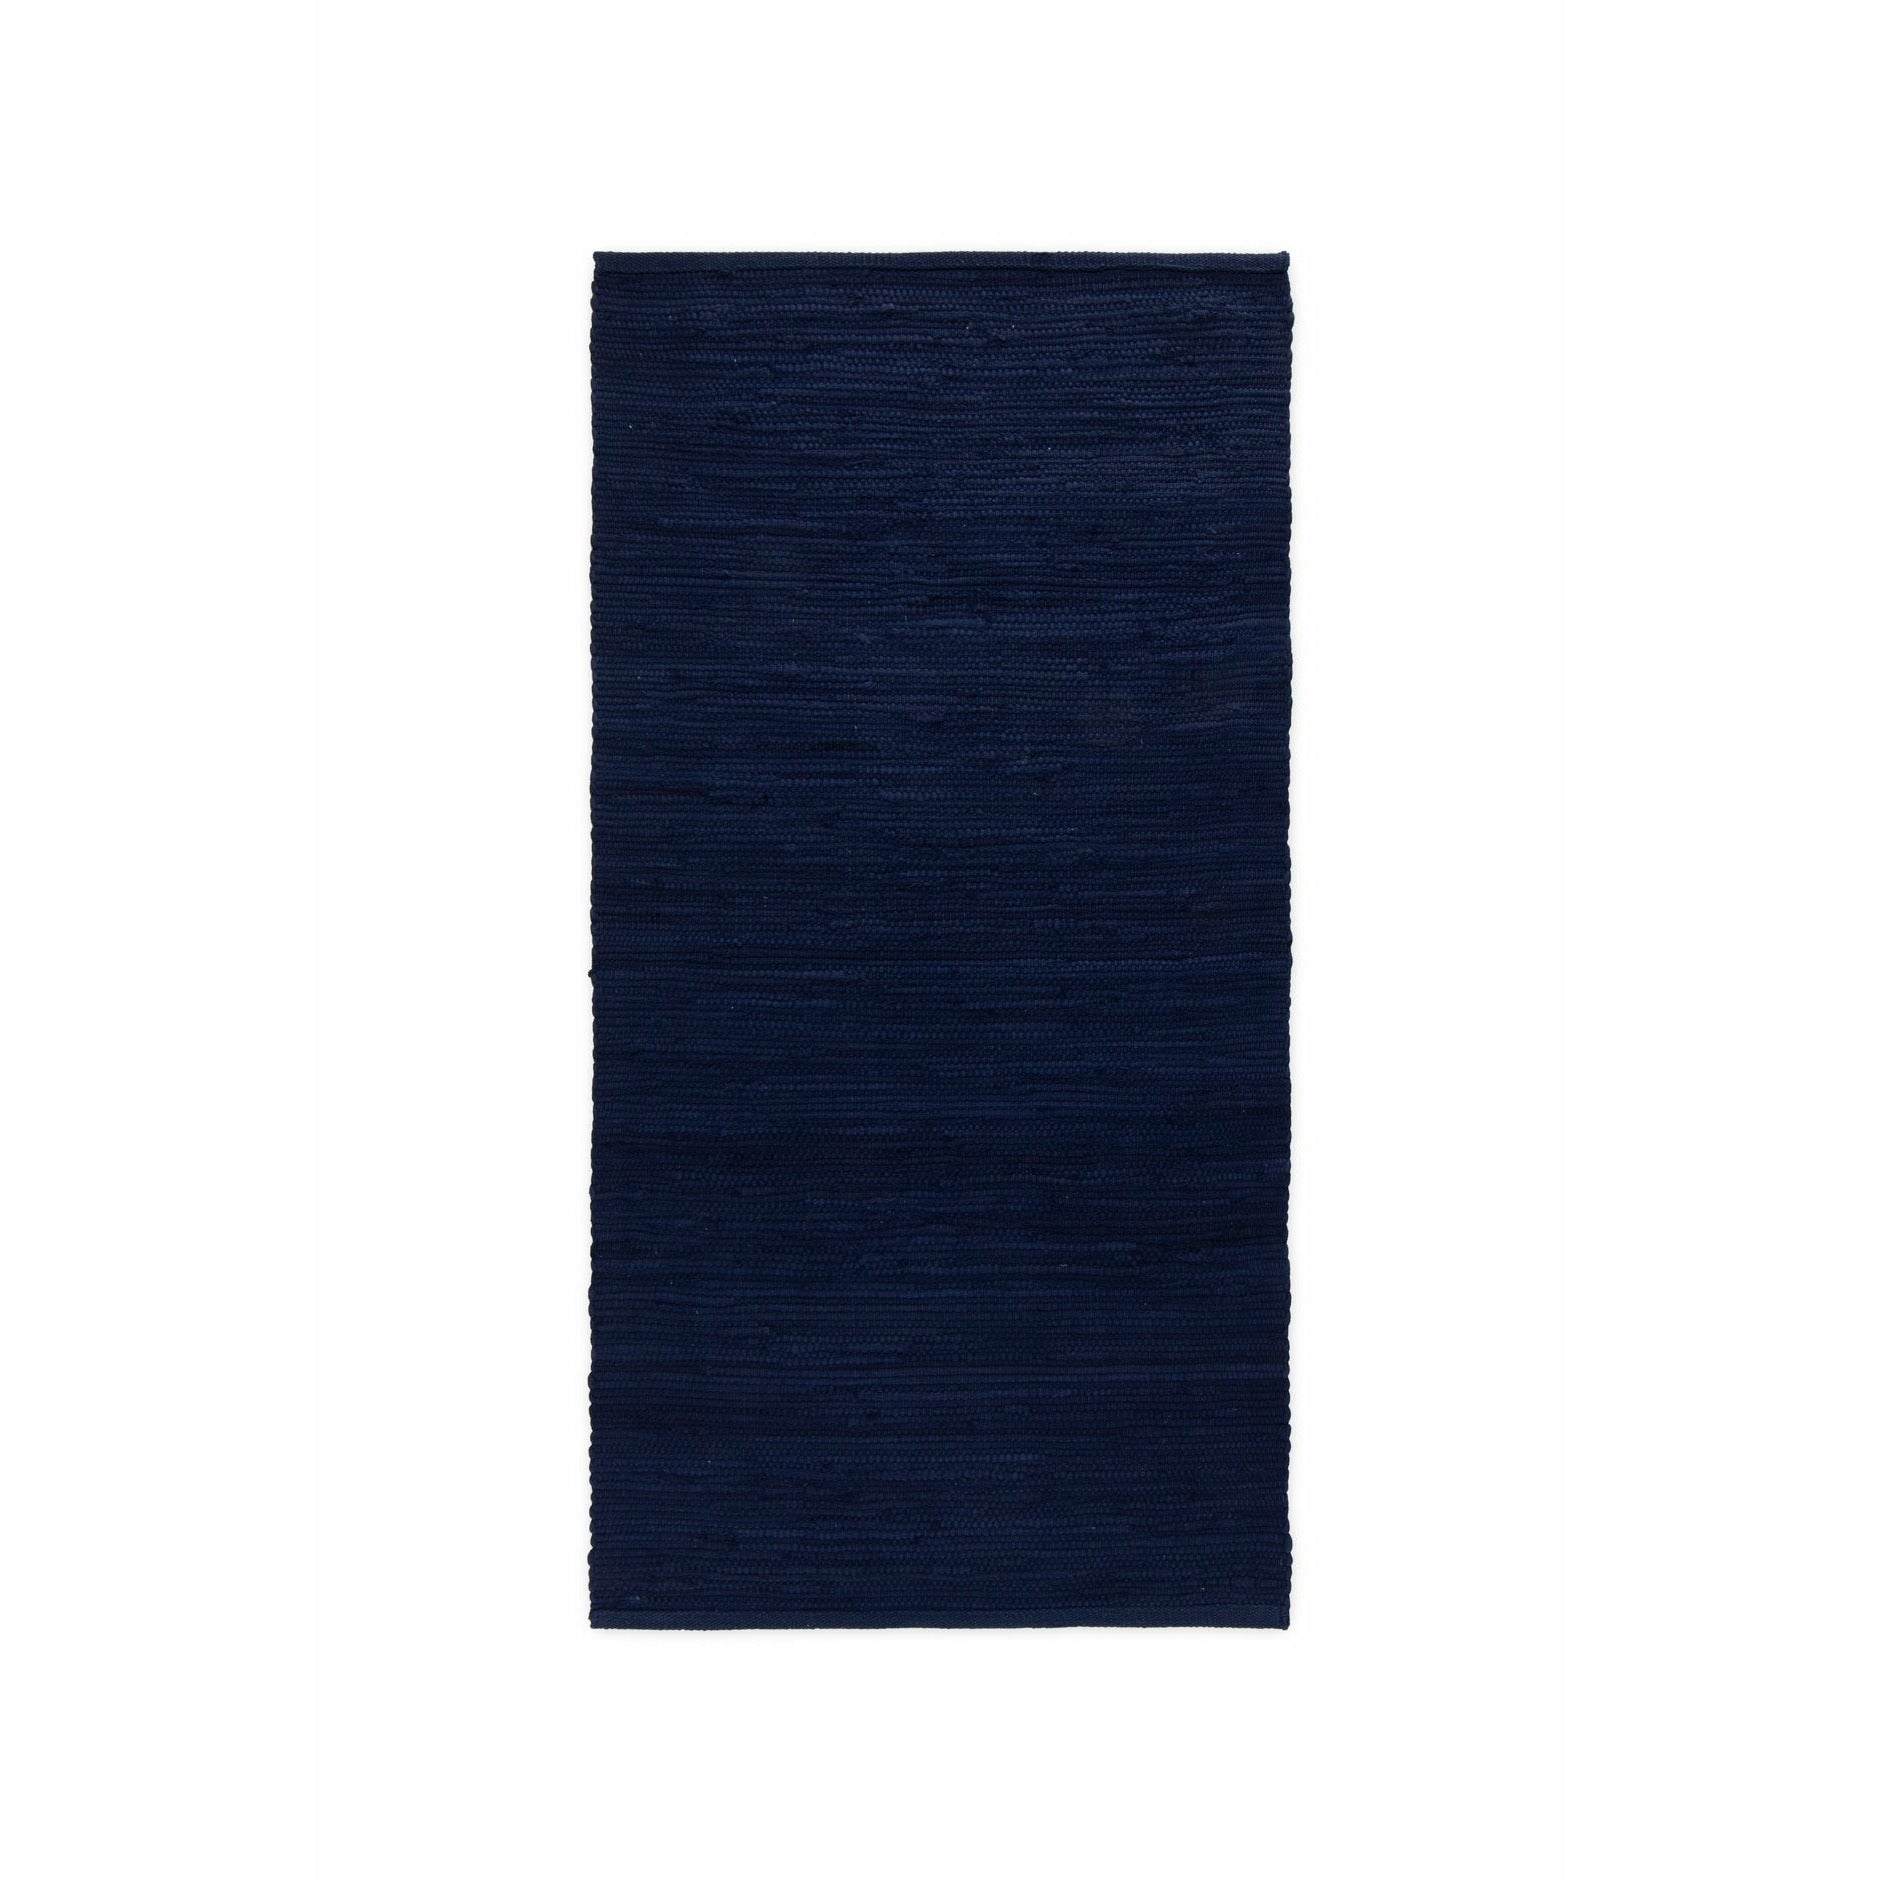 Tappeto di cotone solido blu profondo oceano, 170 x 240 cm